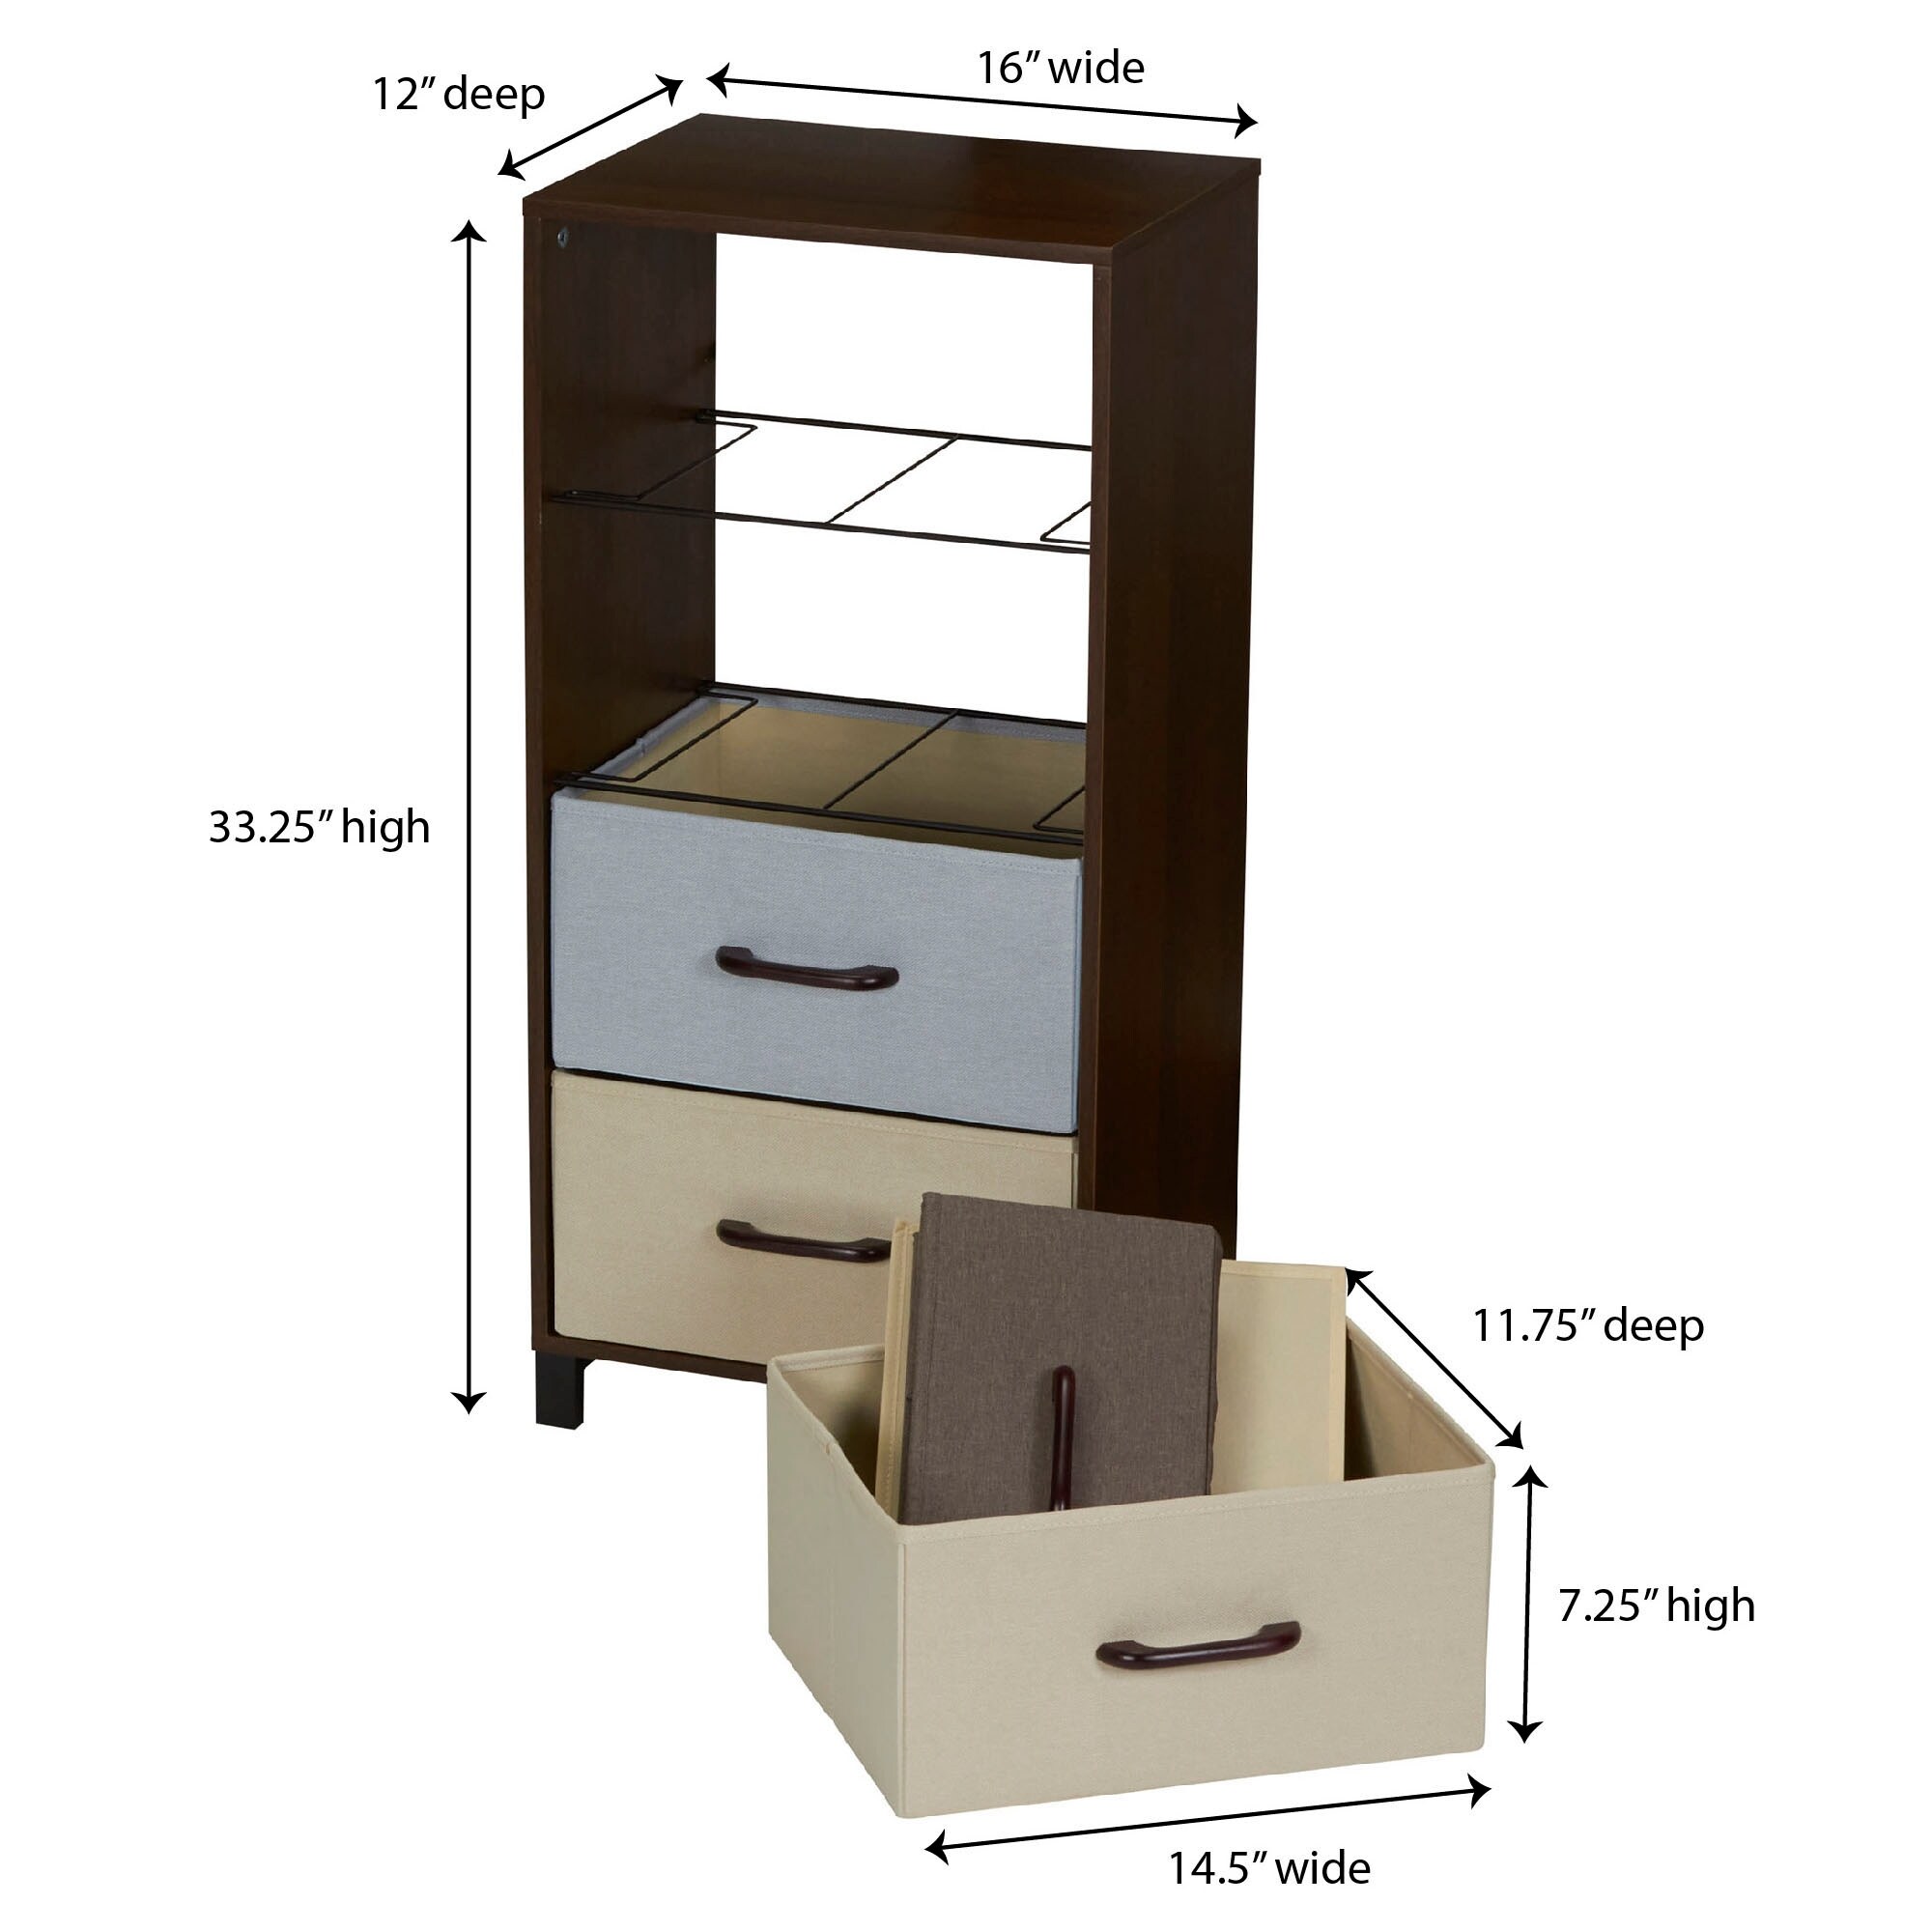 Household Essentials 4-Drawer Storage Chest, Black